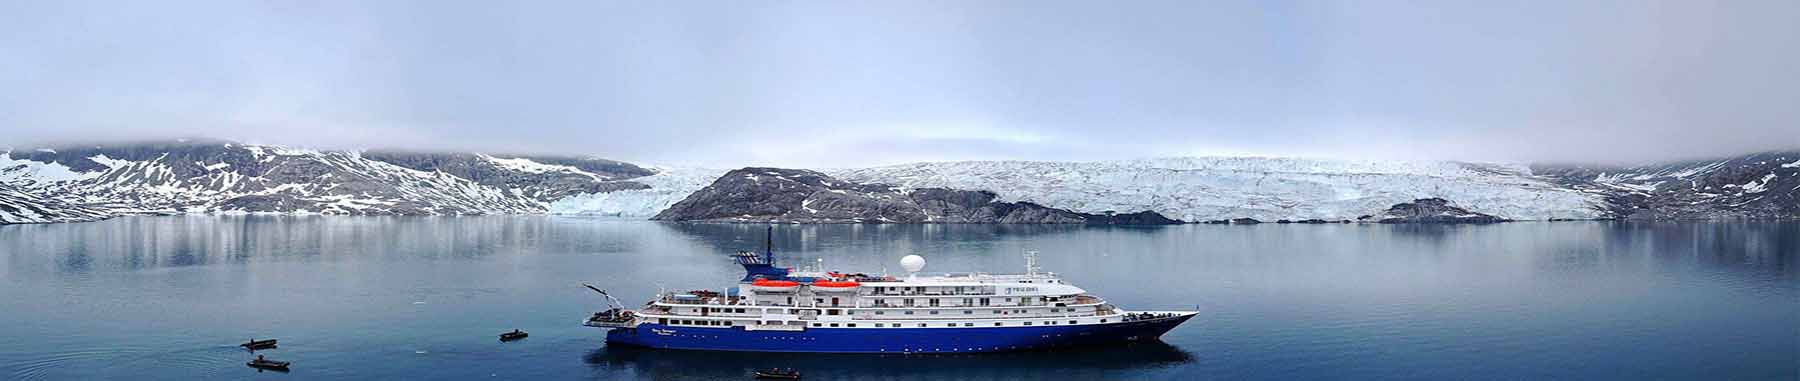 Sea Spirit | antarctica Cruise